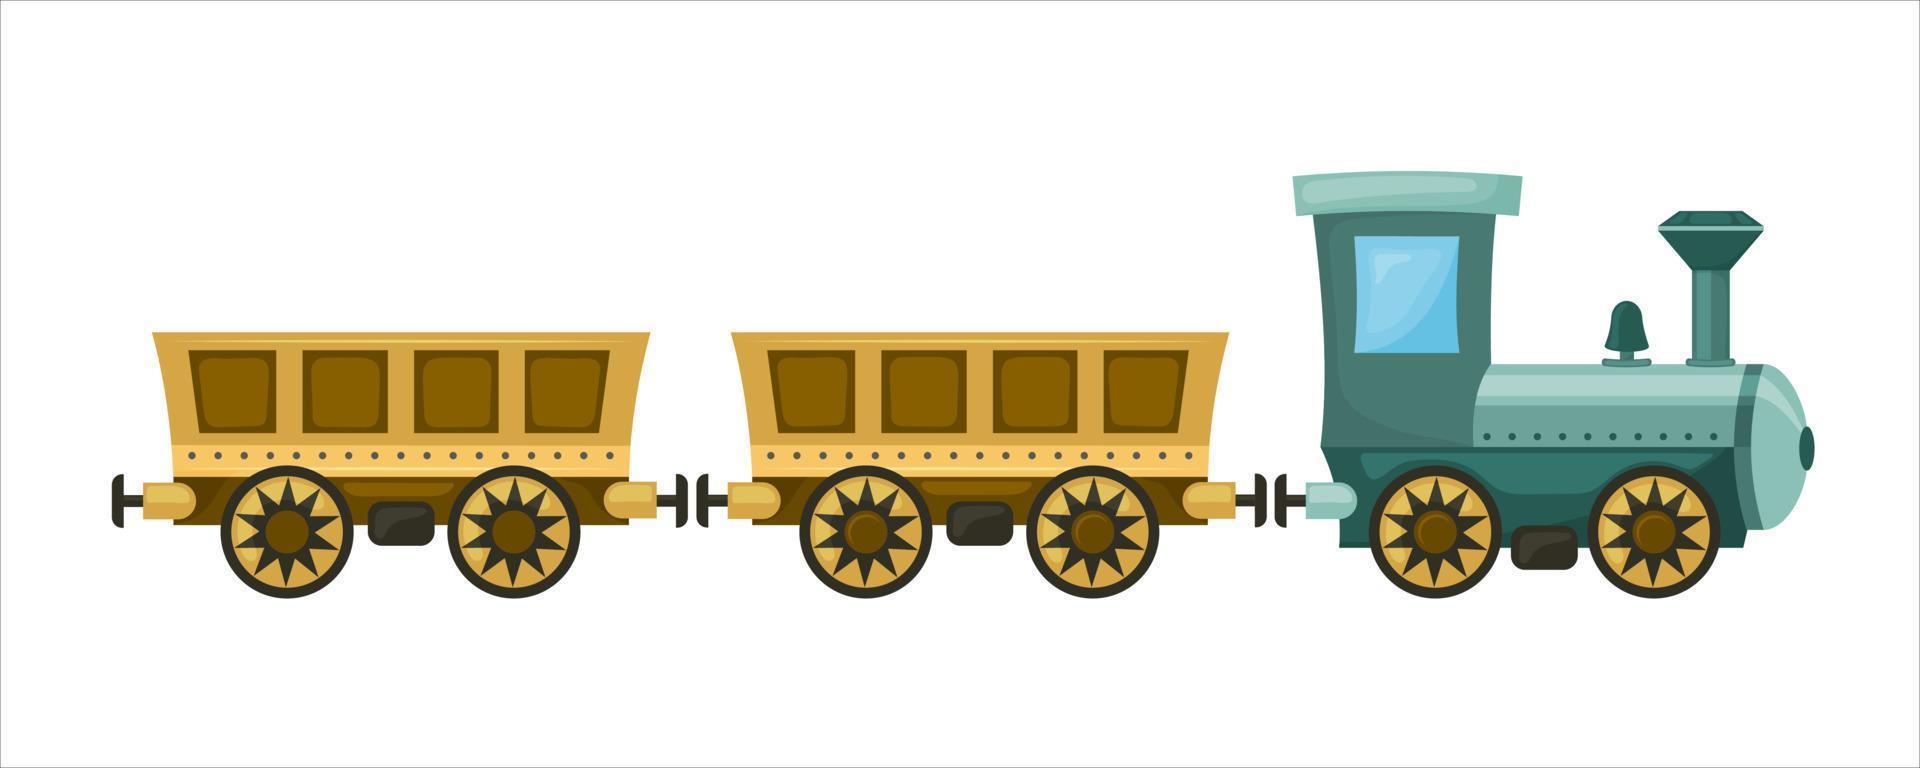 söt jul tåg, lokomotiv med bilar på blå lutning bakgrund. vektor illustration.